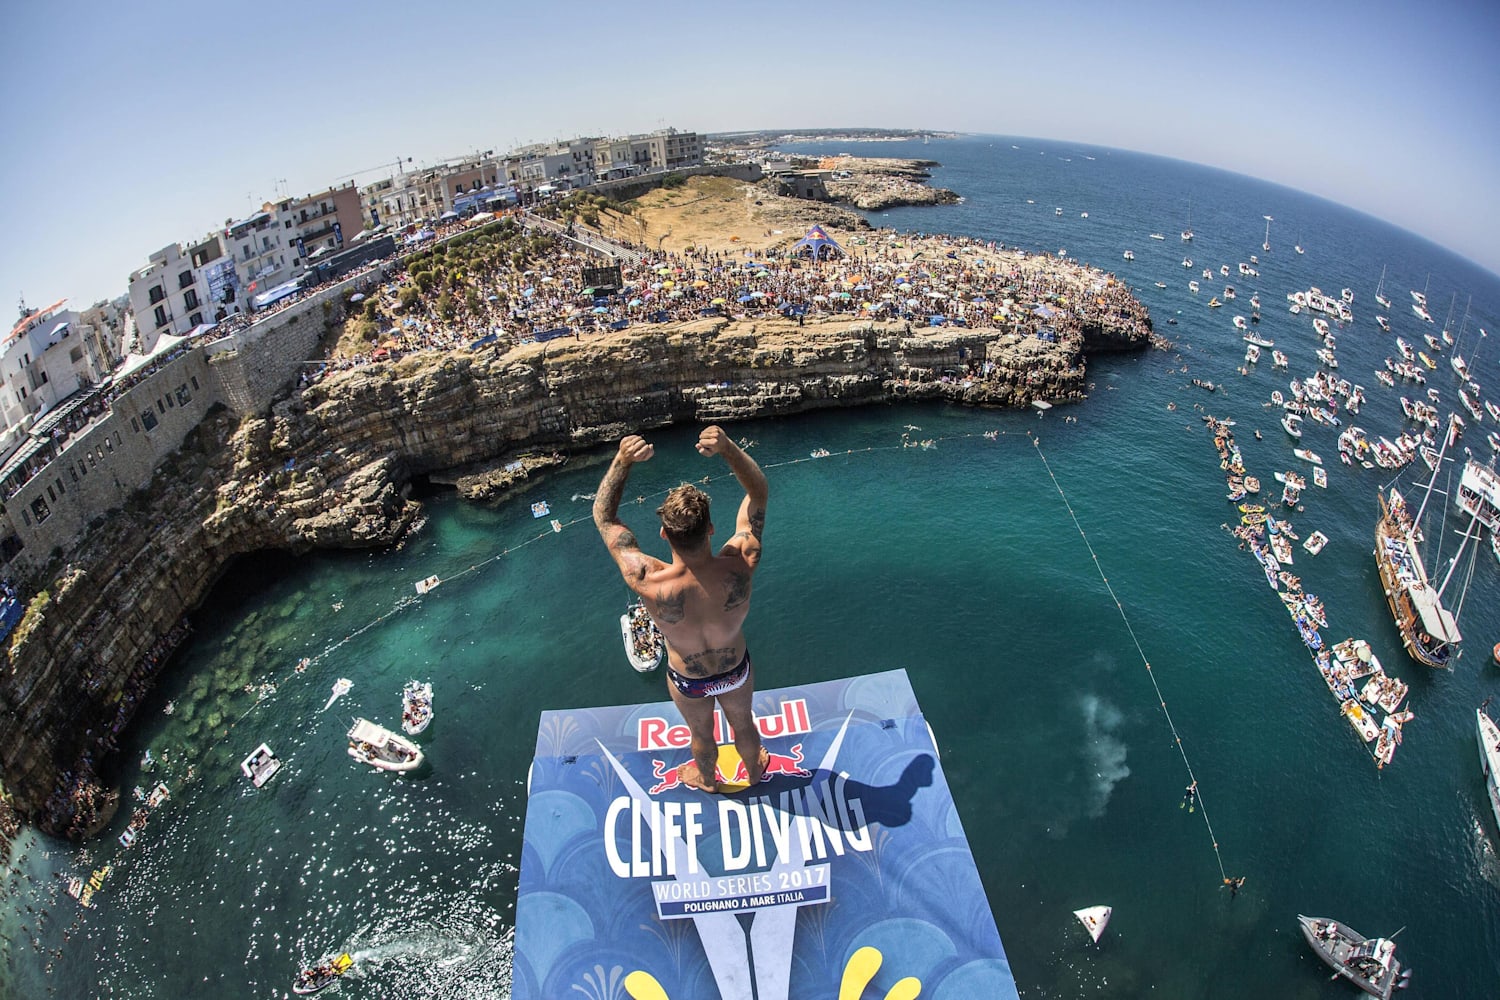 Red Bull Cliff Diving Polignano a Mare Tutte le info